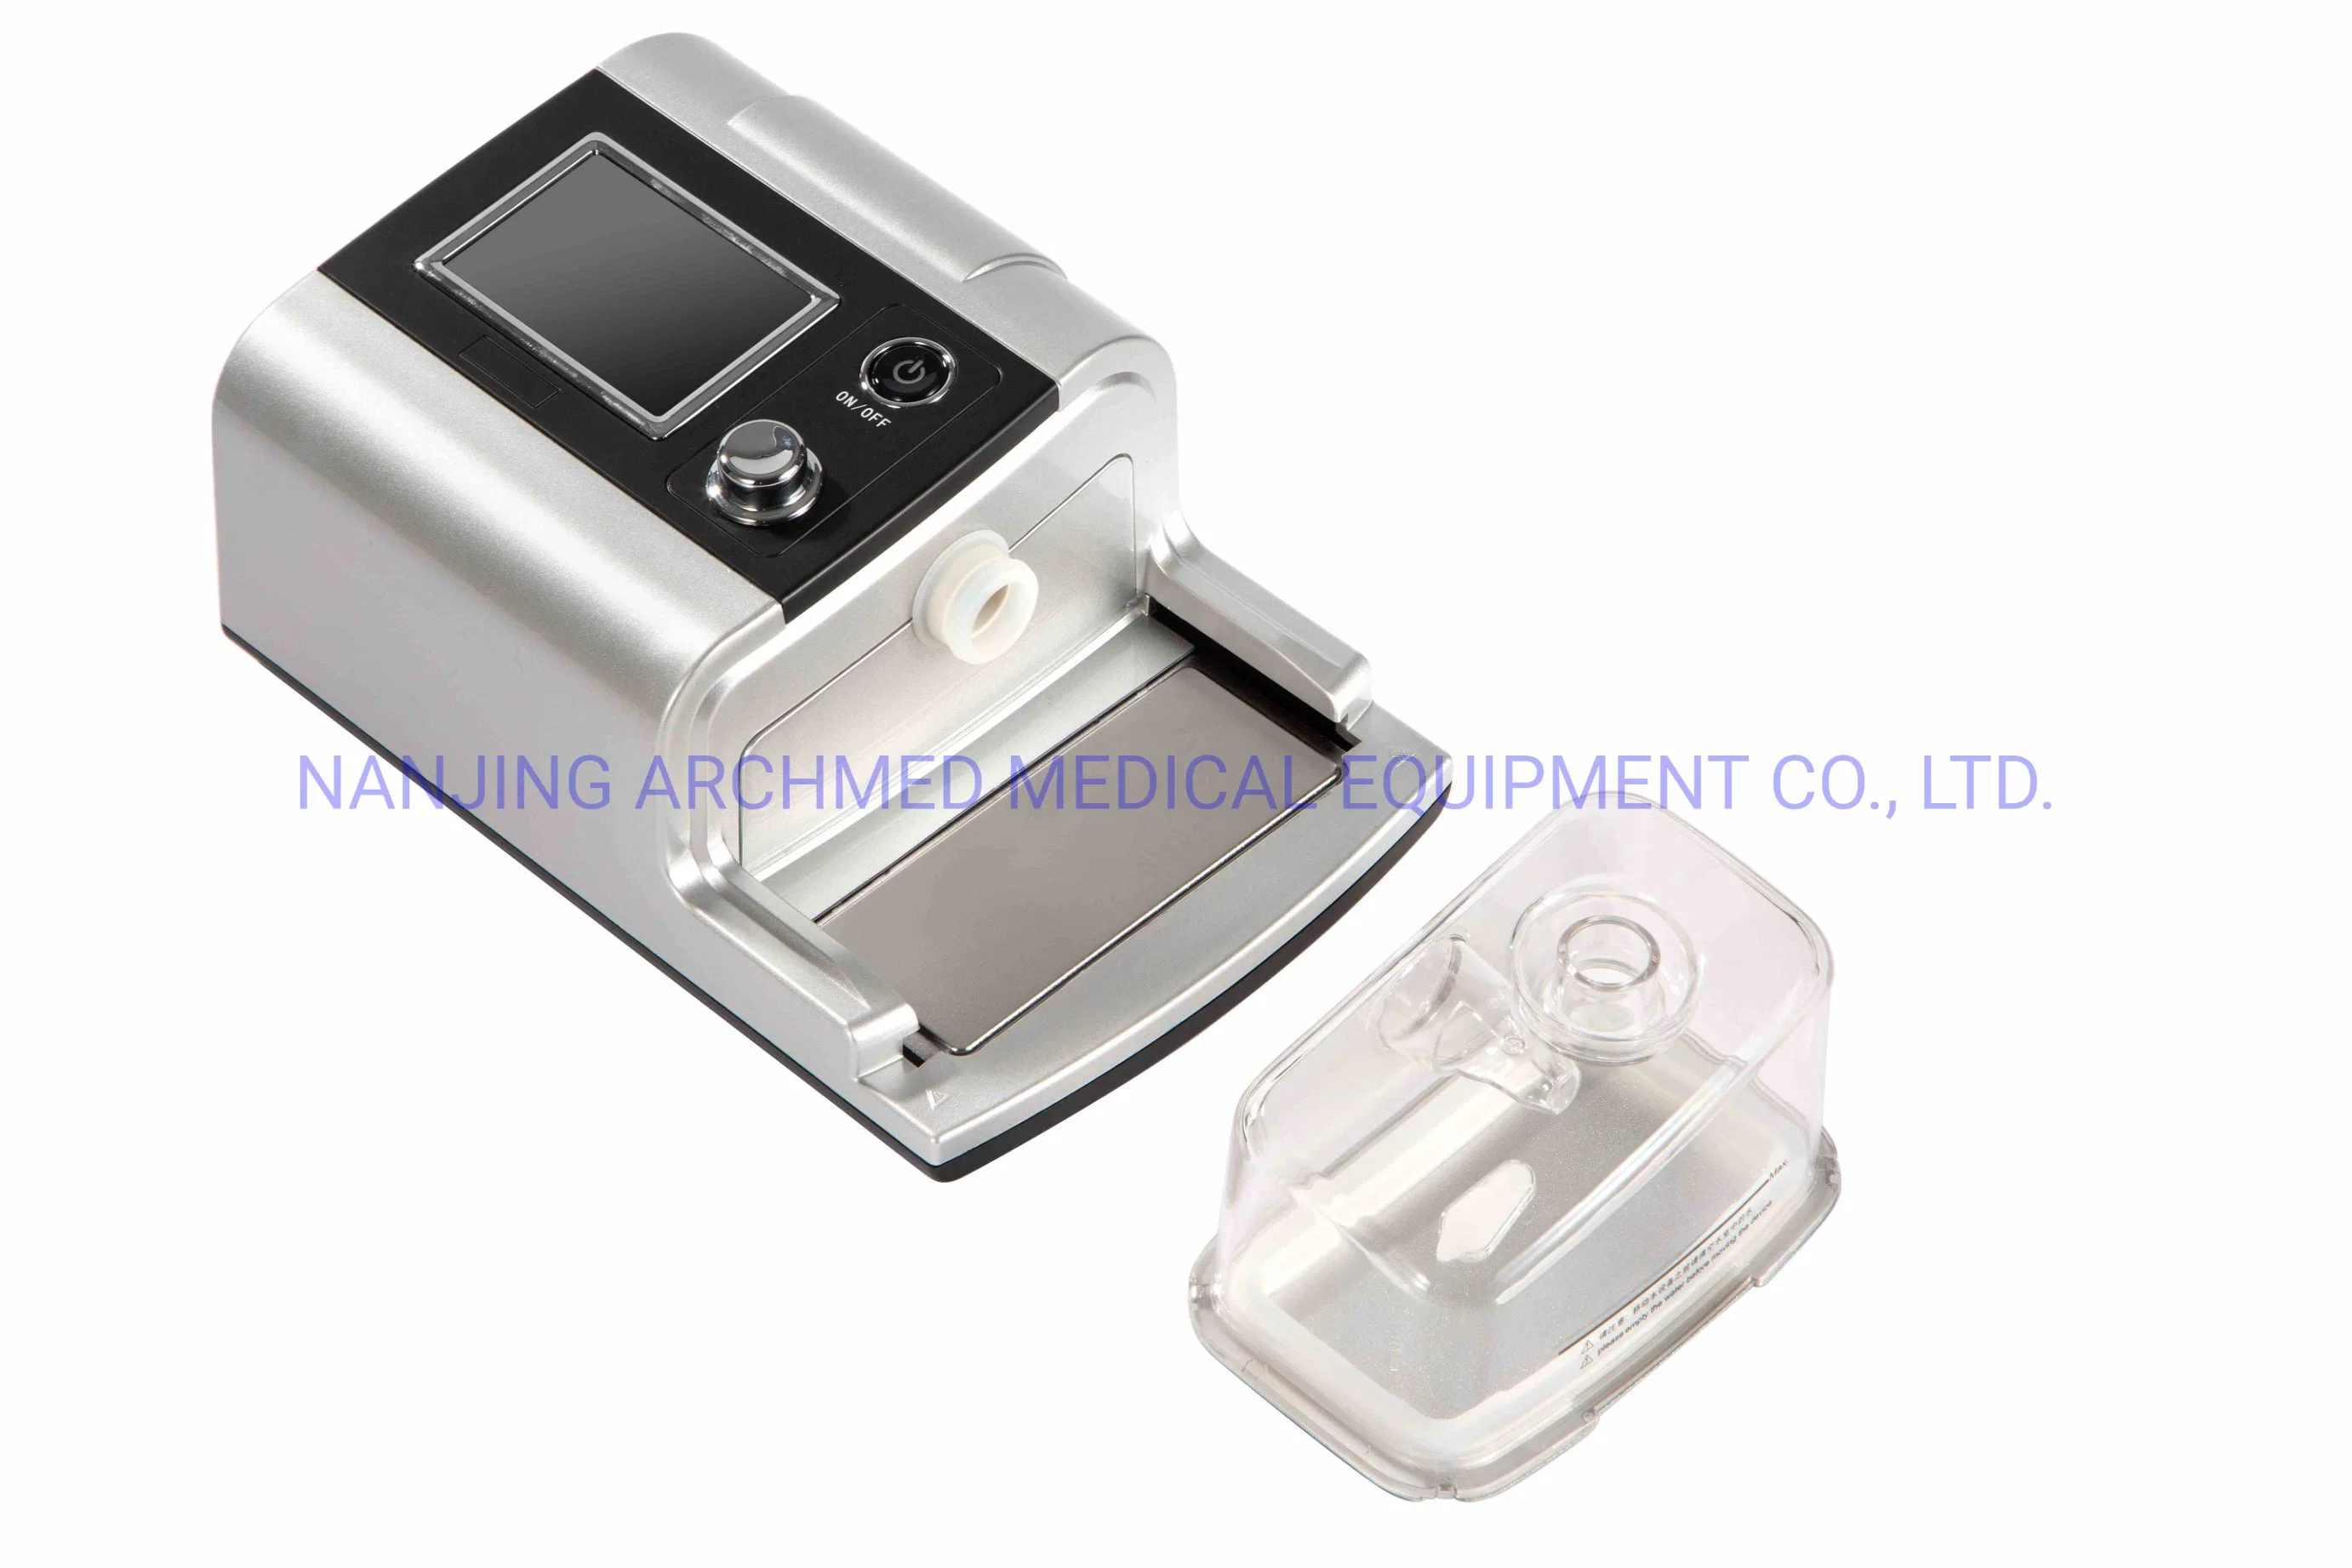 المعدات الطبية جهاز التنفس المتنقل CPAP جهاز التنفس الخاص بتوقف التنفس أثناء النوم المعالجة بشاشة LCD مقاس 3.5 بوصة ′ TFT